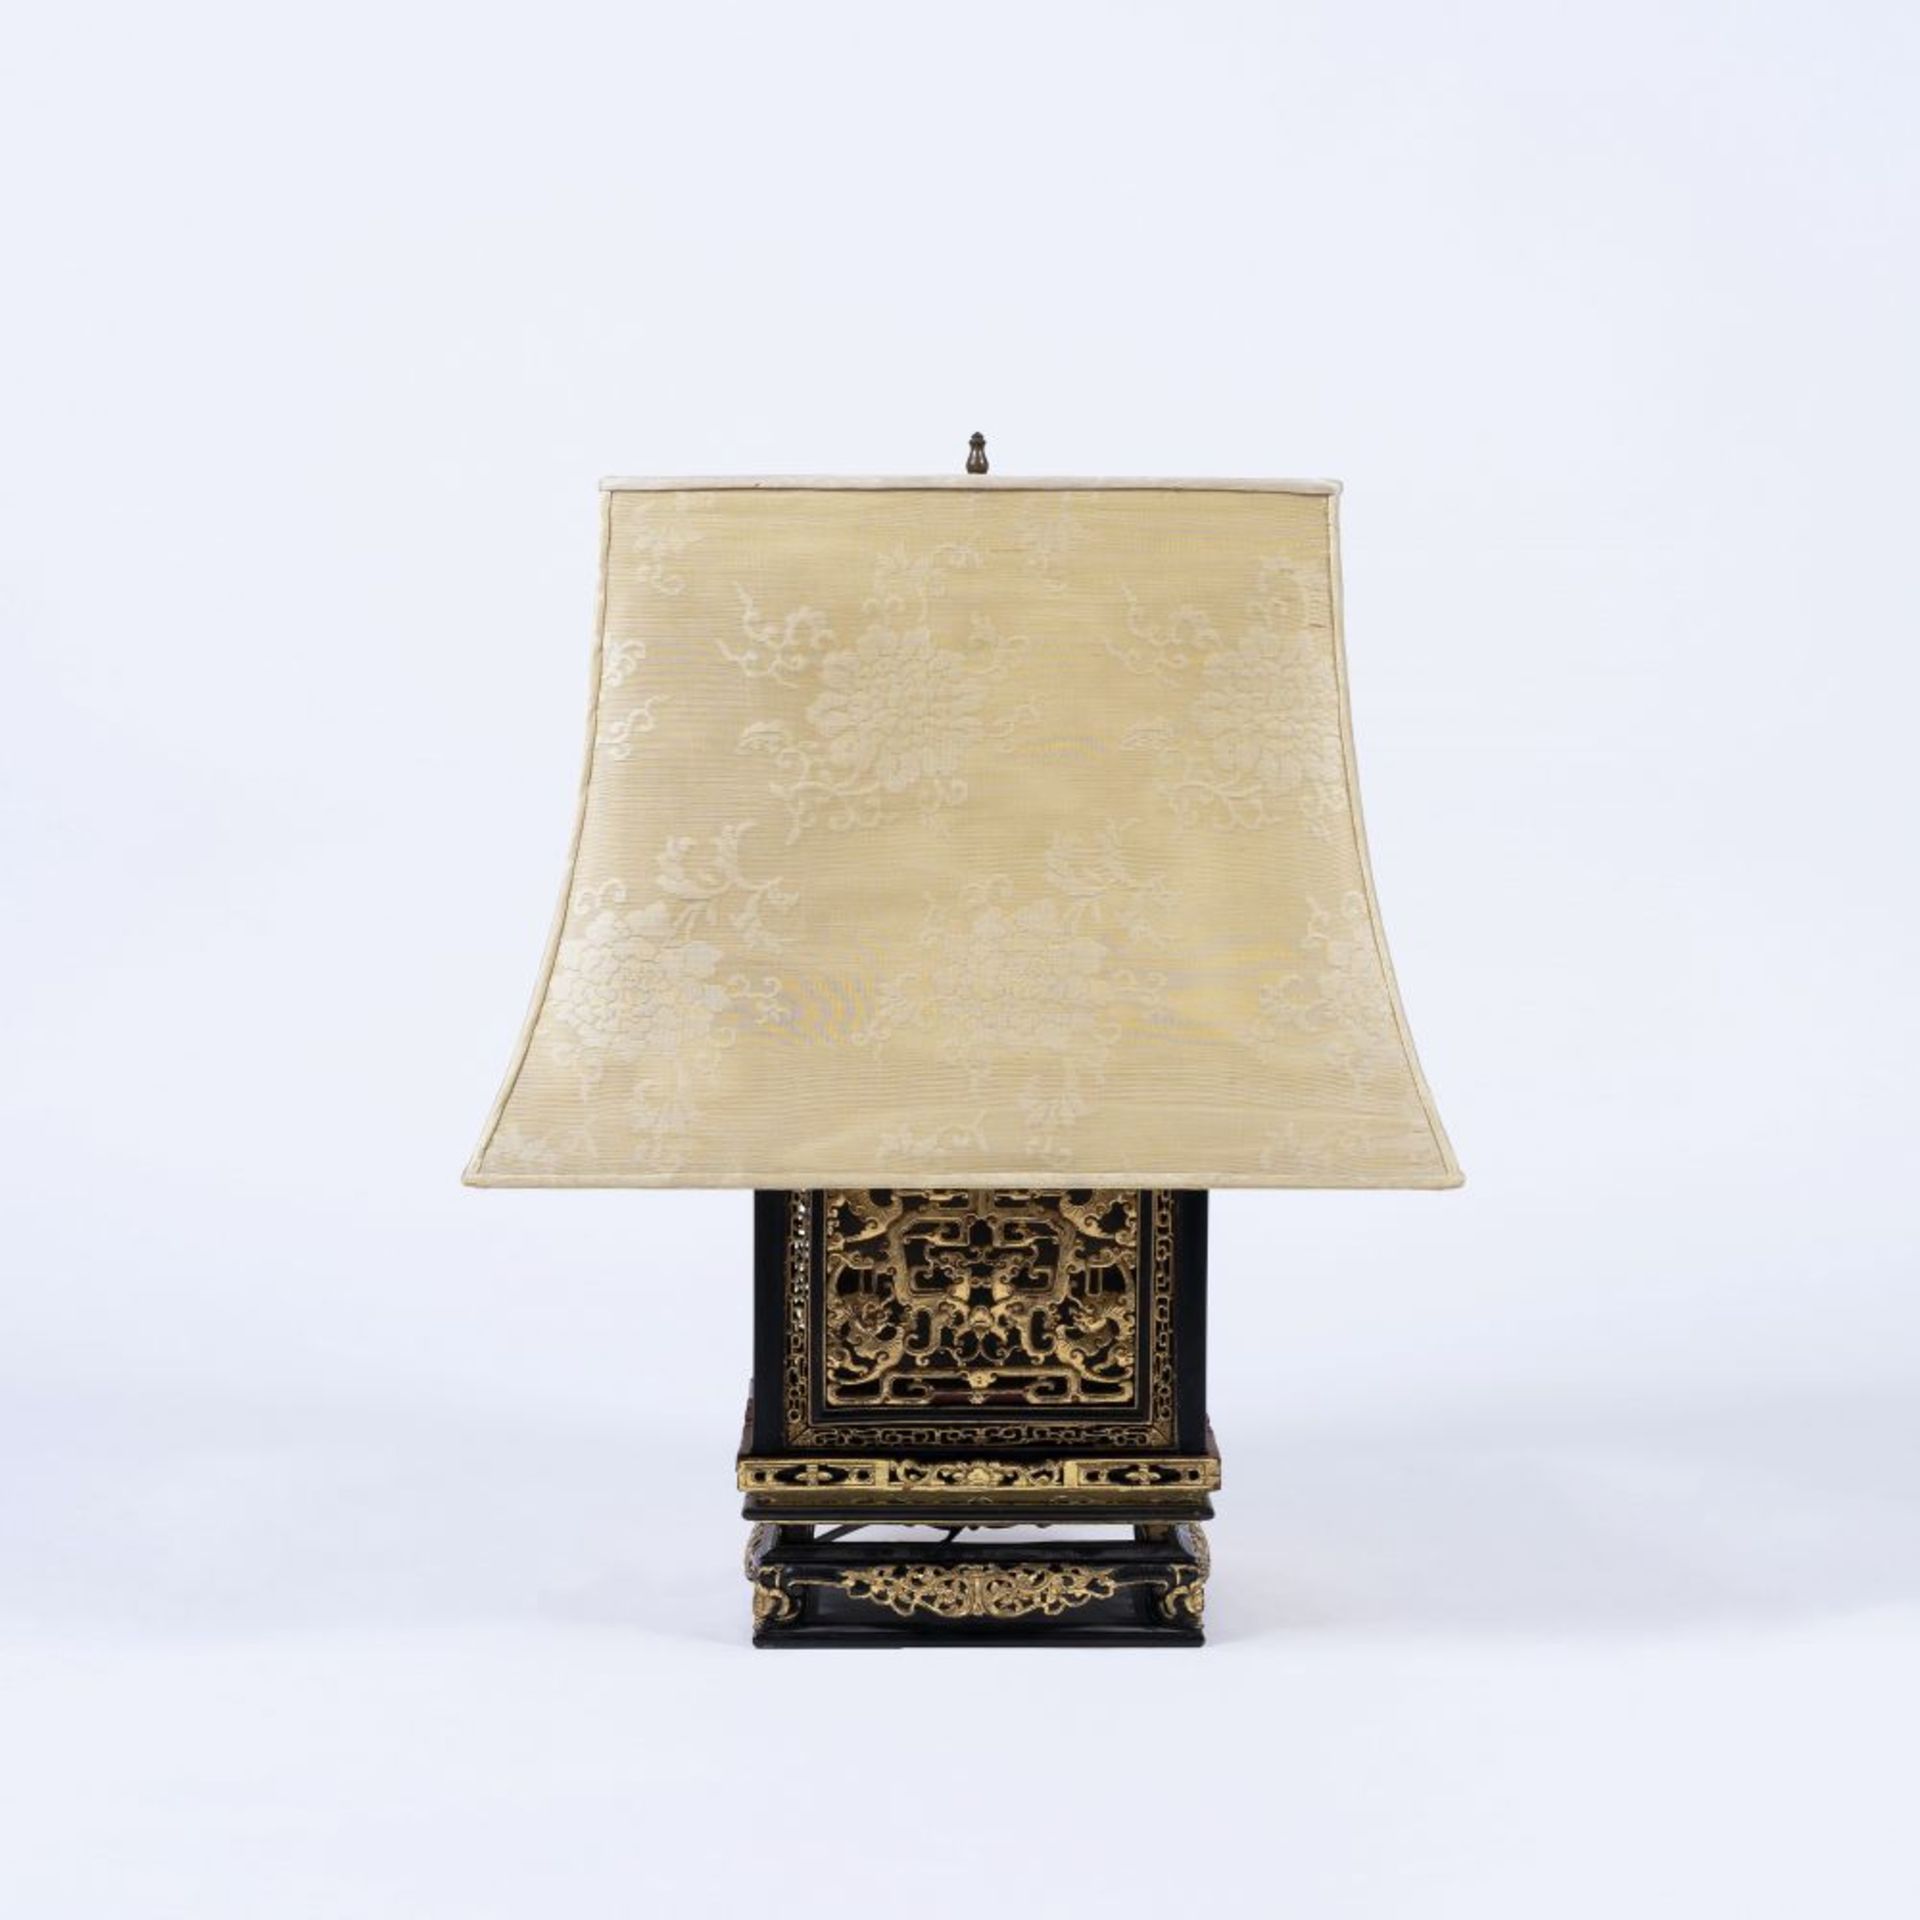 Chinesische Tischlampe mit Schnitzdekor.